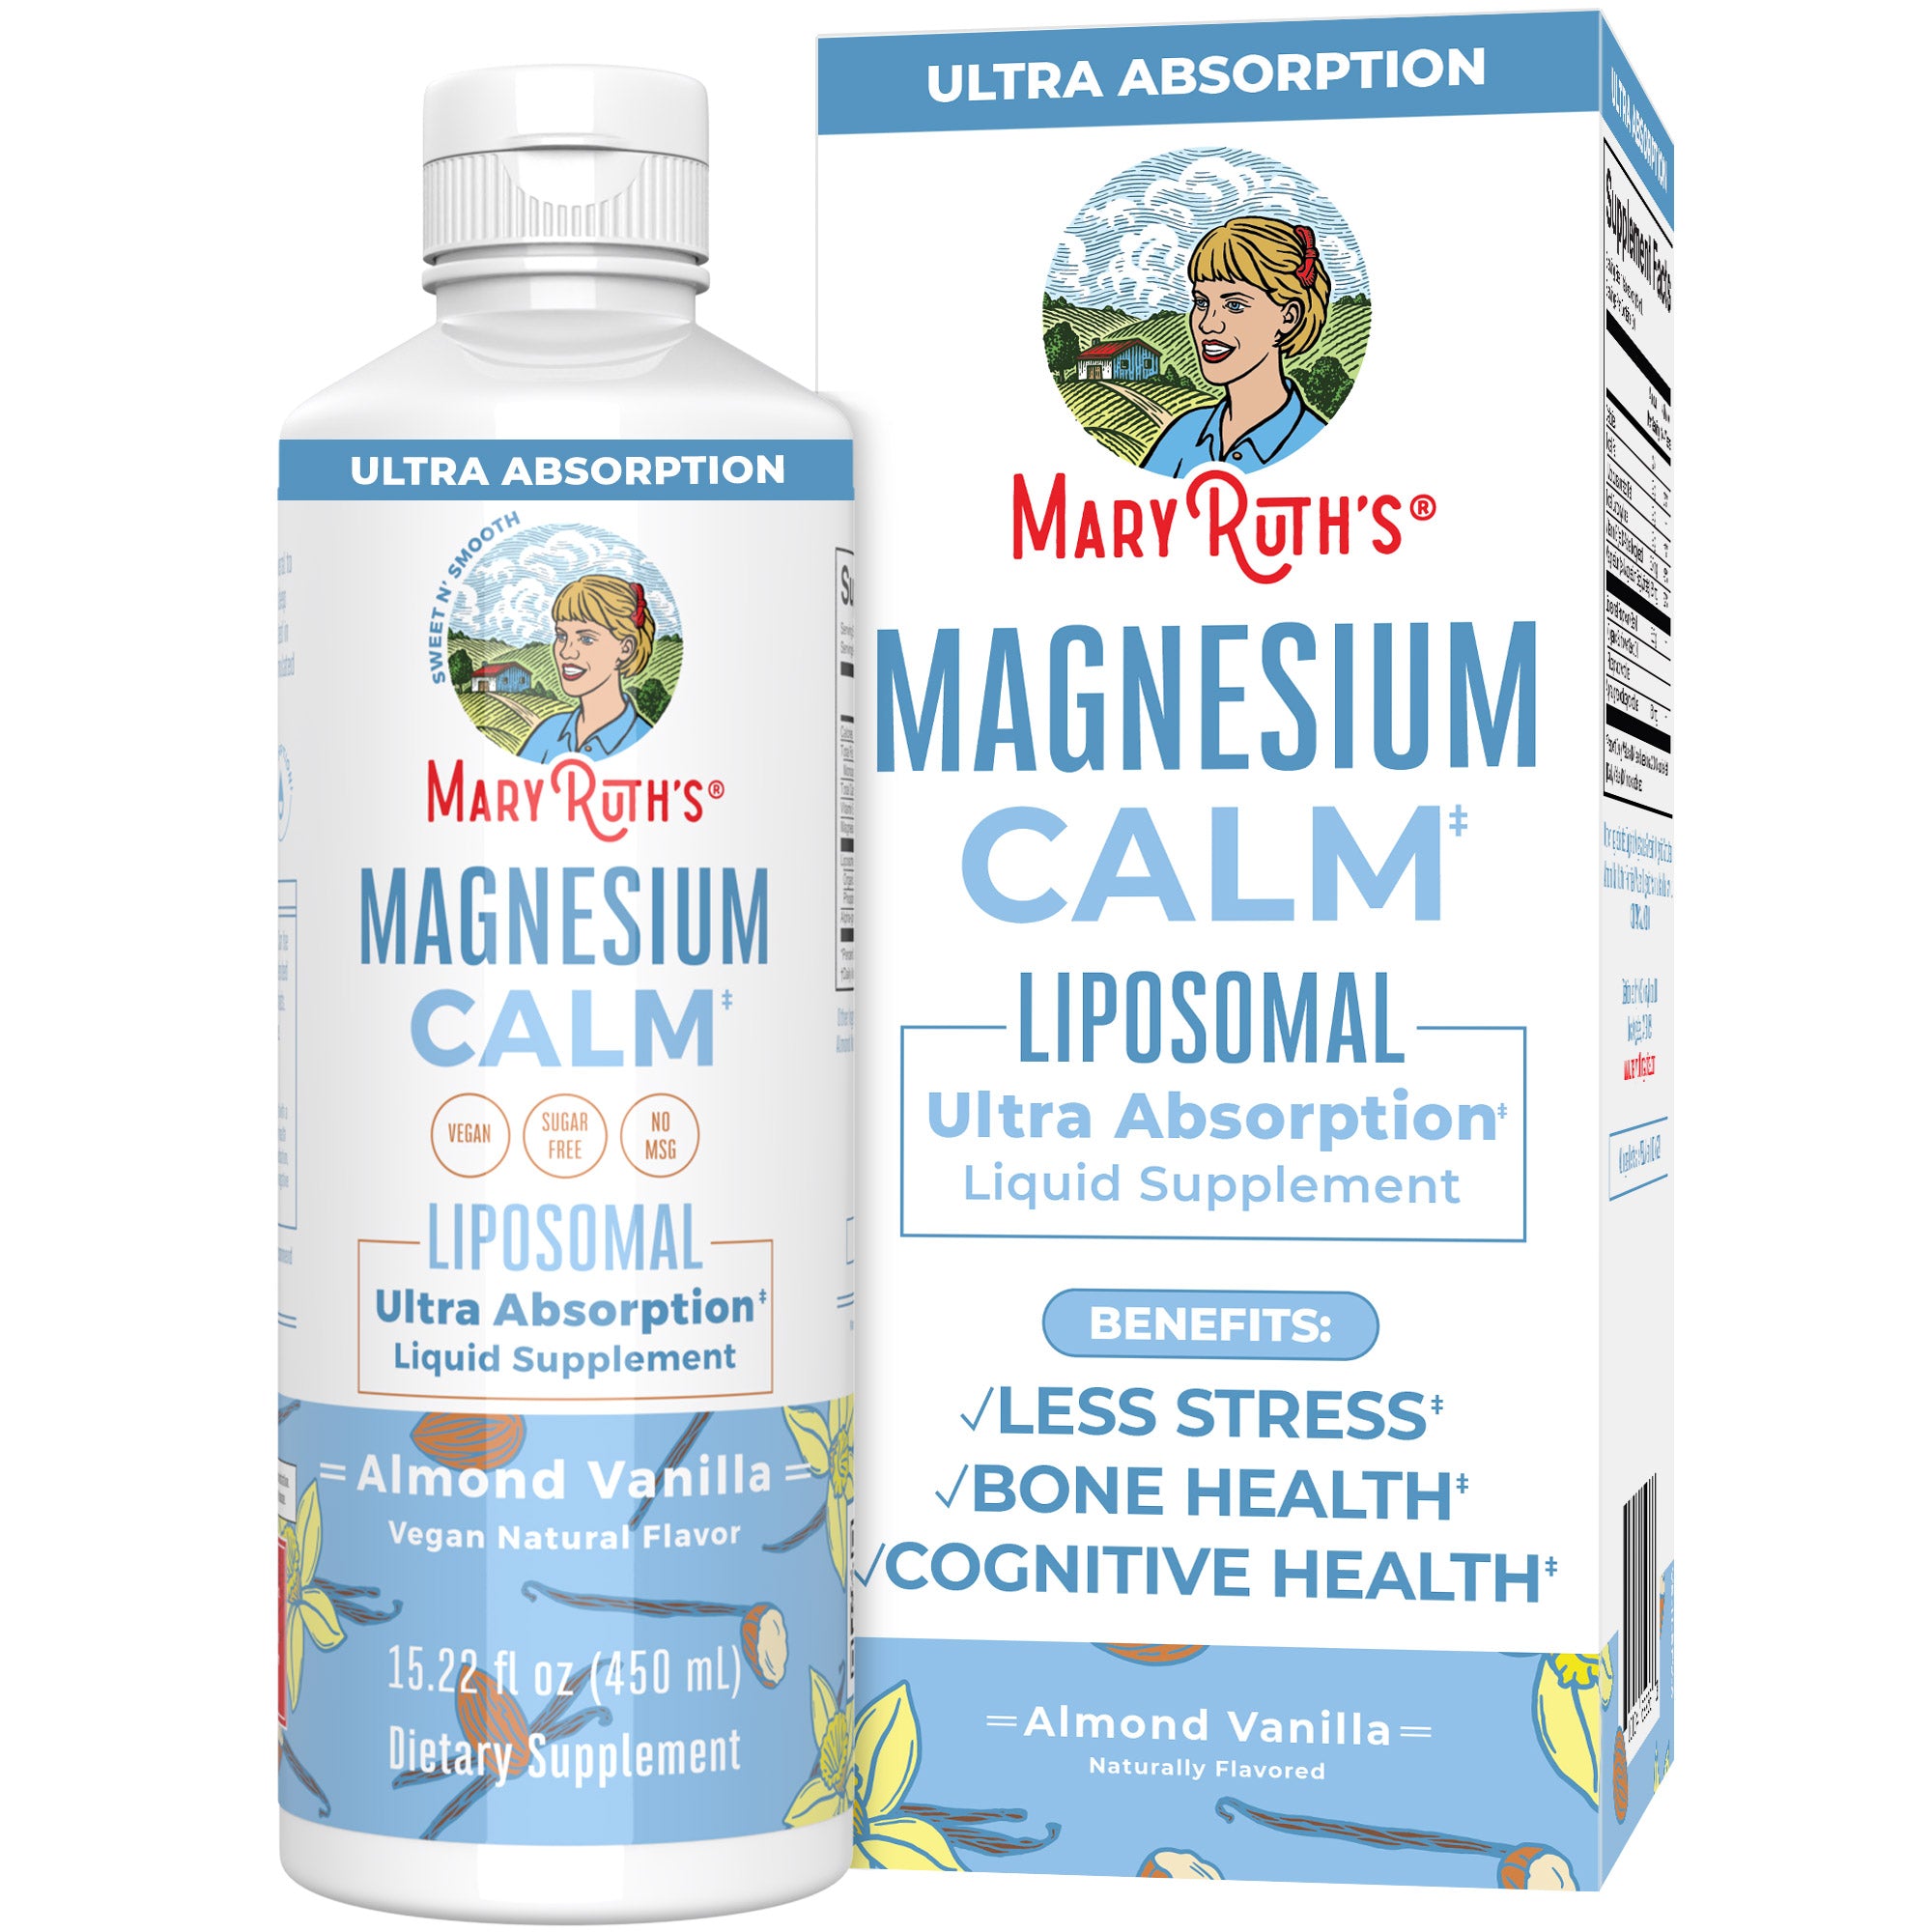 Magnesium Calm Liposomal